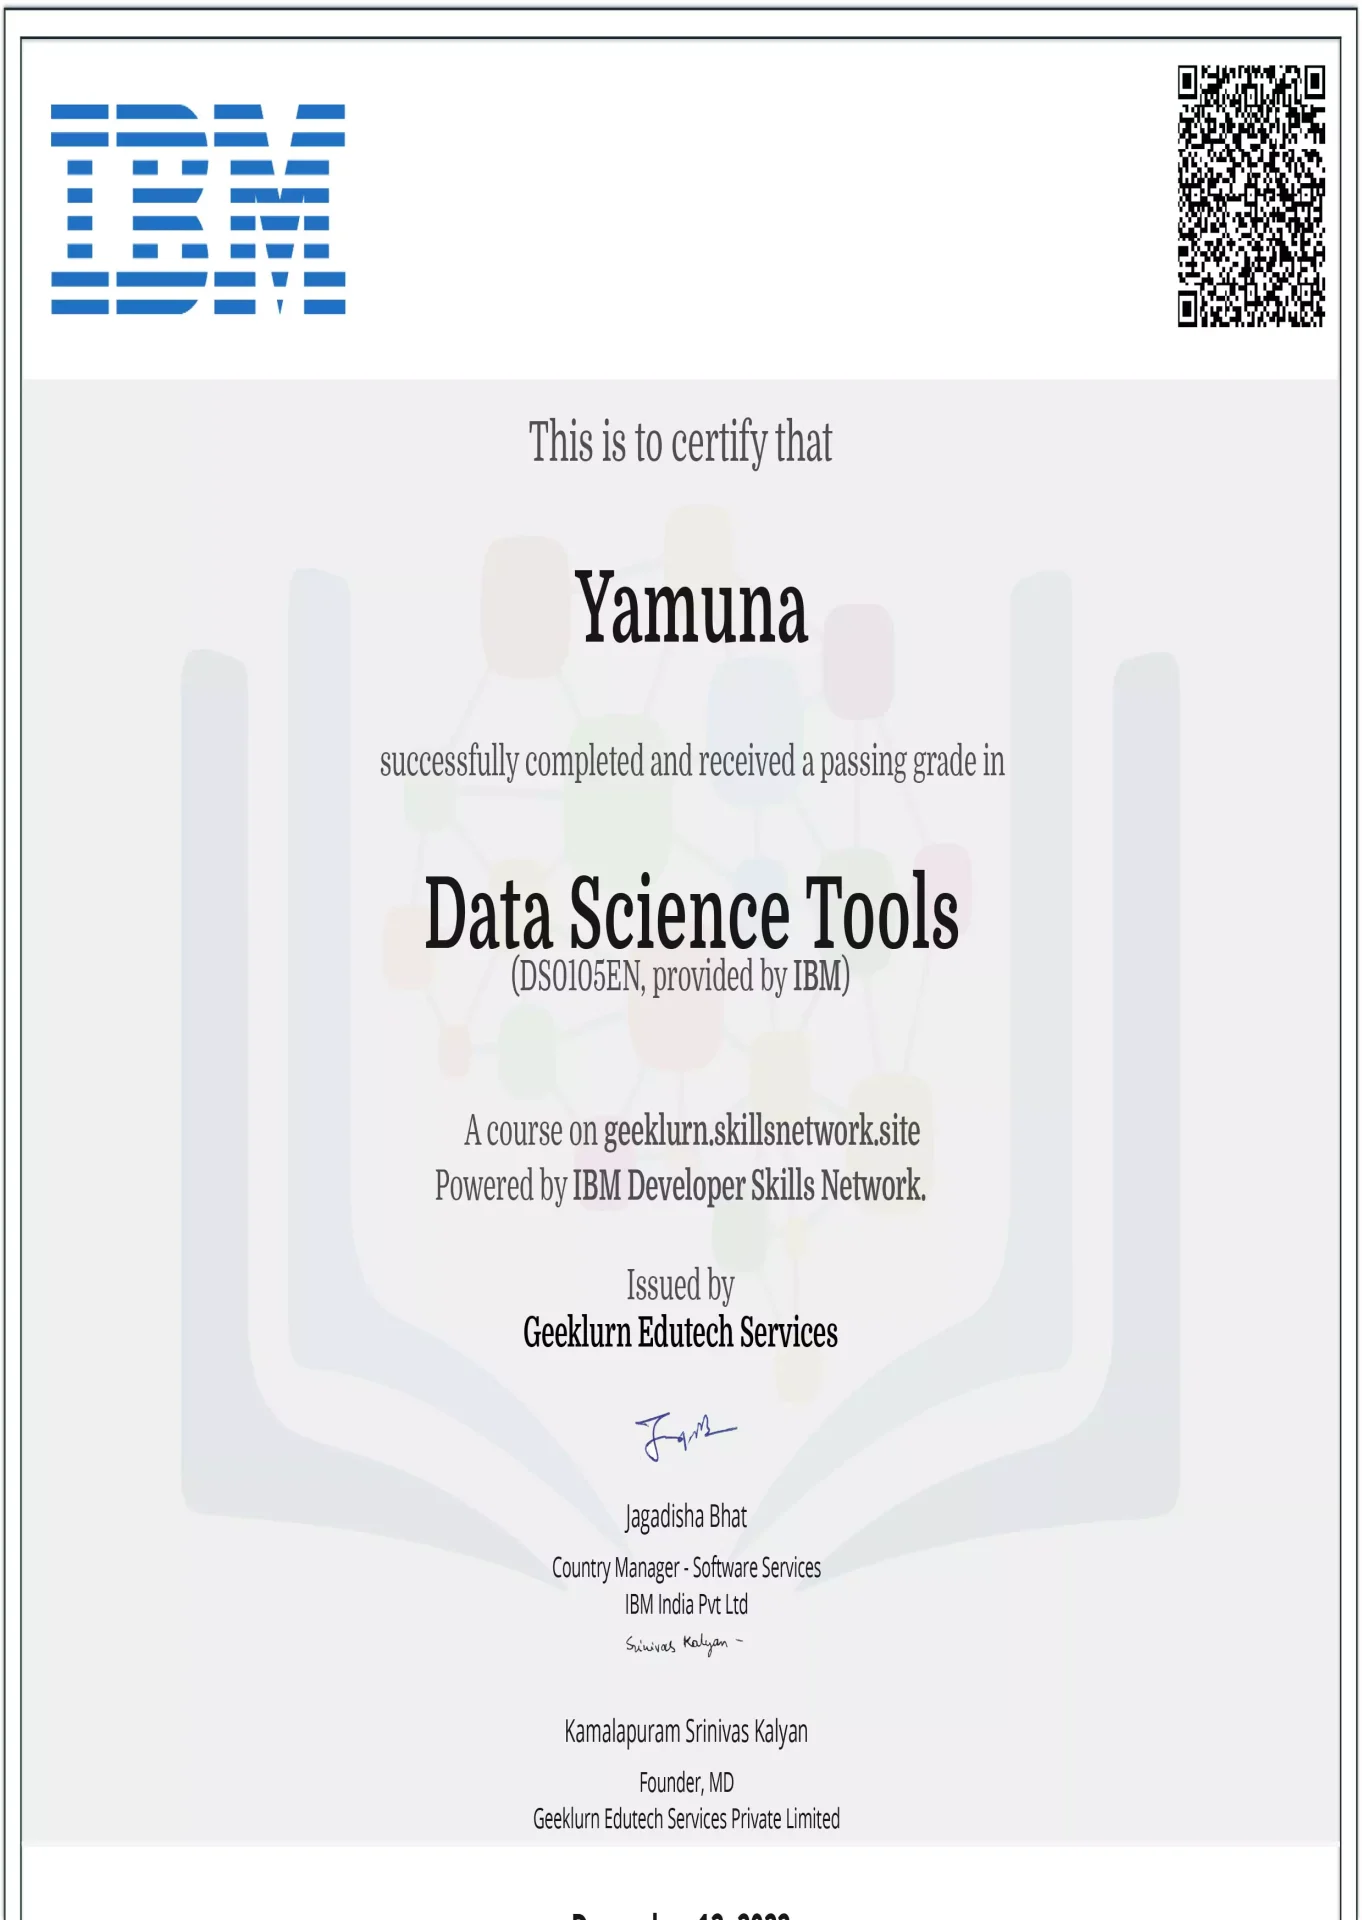 ibm-ds0105en-certificate-geeklurn-edutech-services